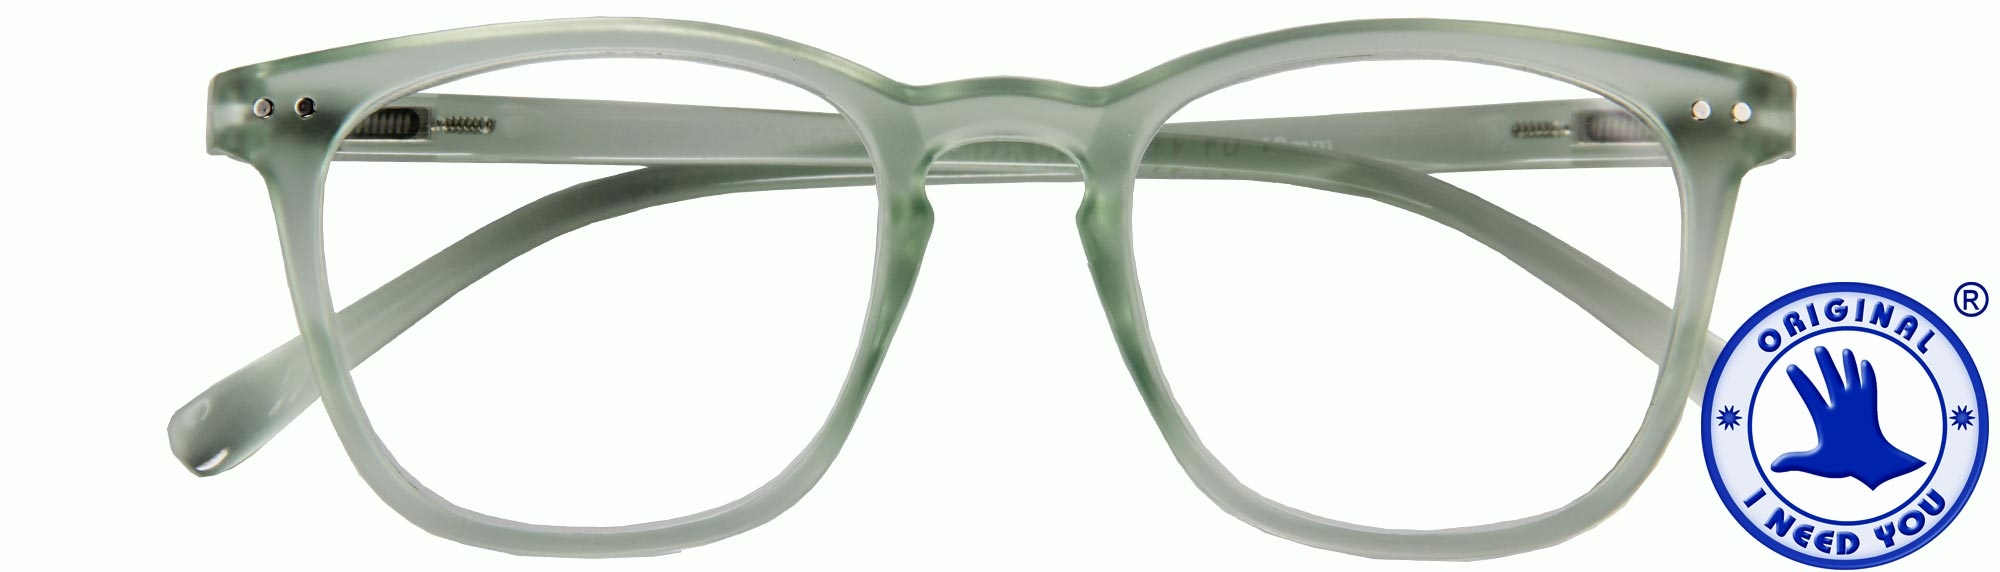 Lesebrille mit Sehstärke Federscharnier hochwertig Brille mit Brillenetui A2 